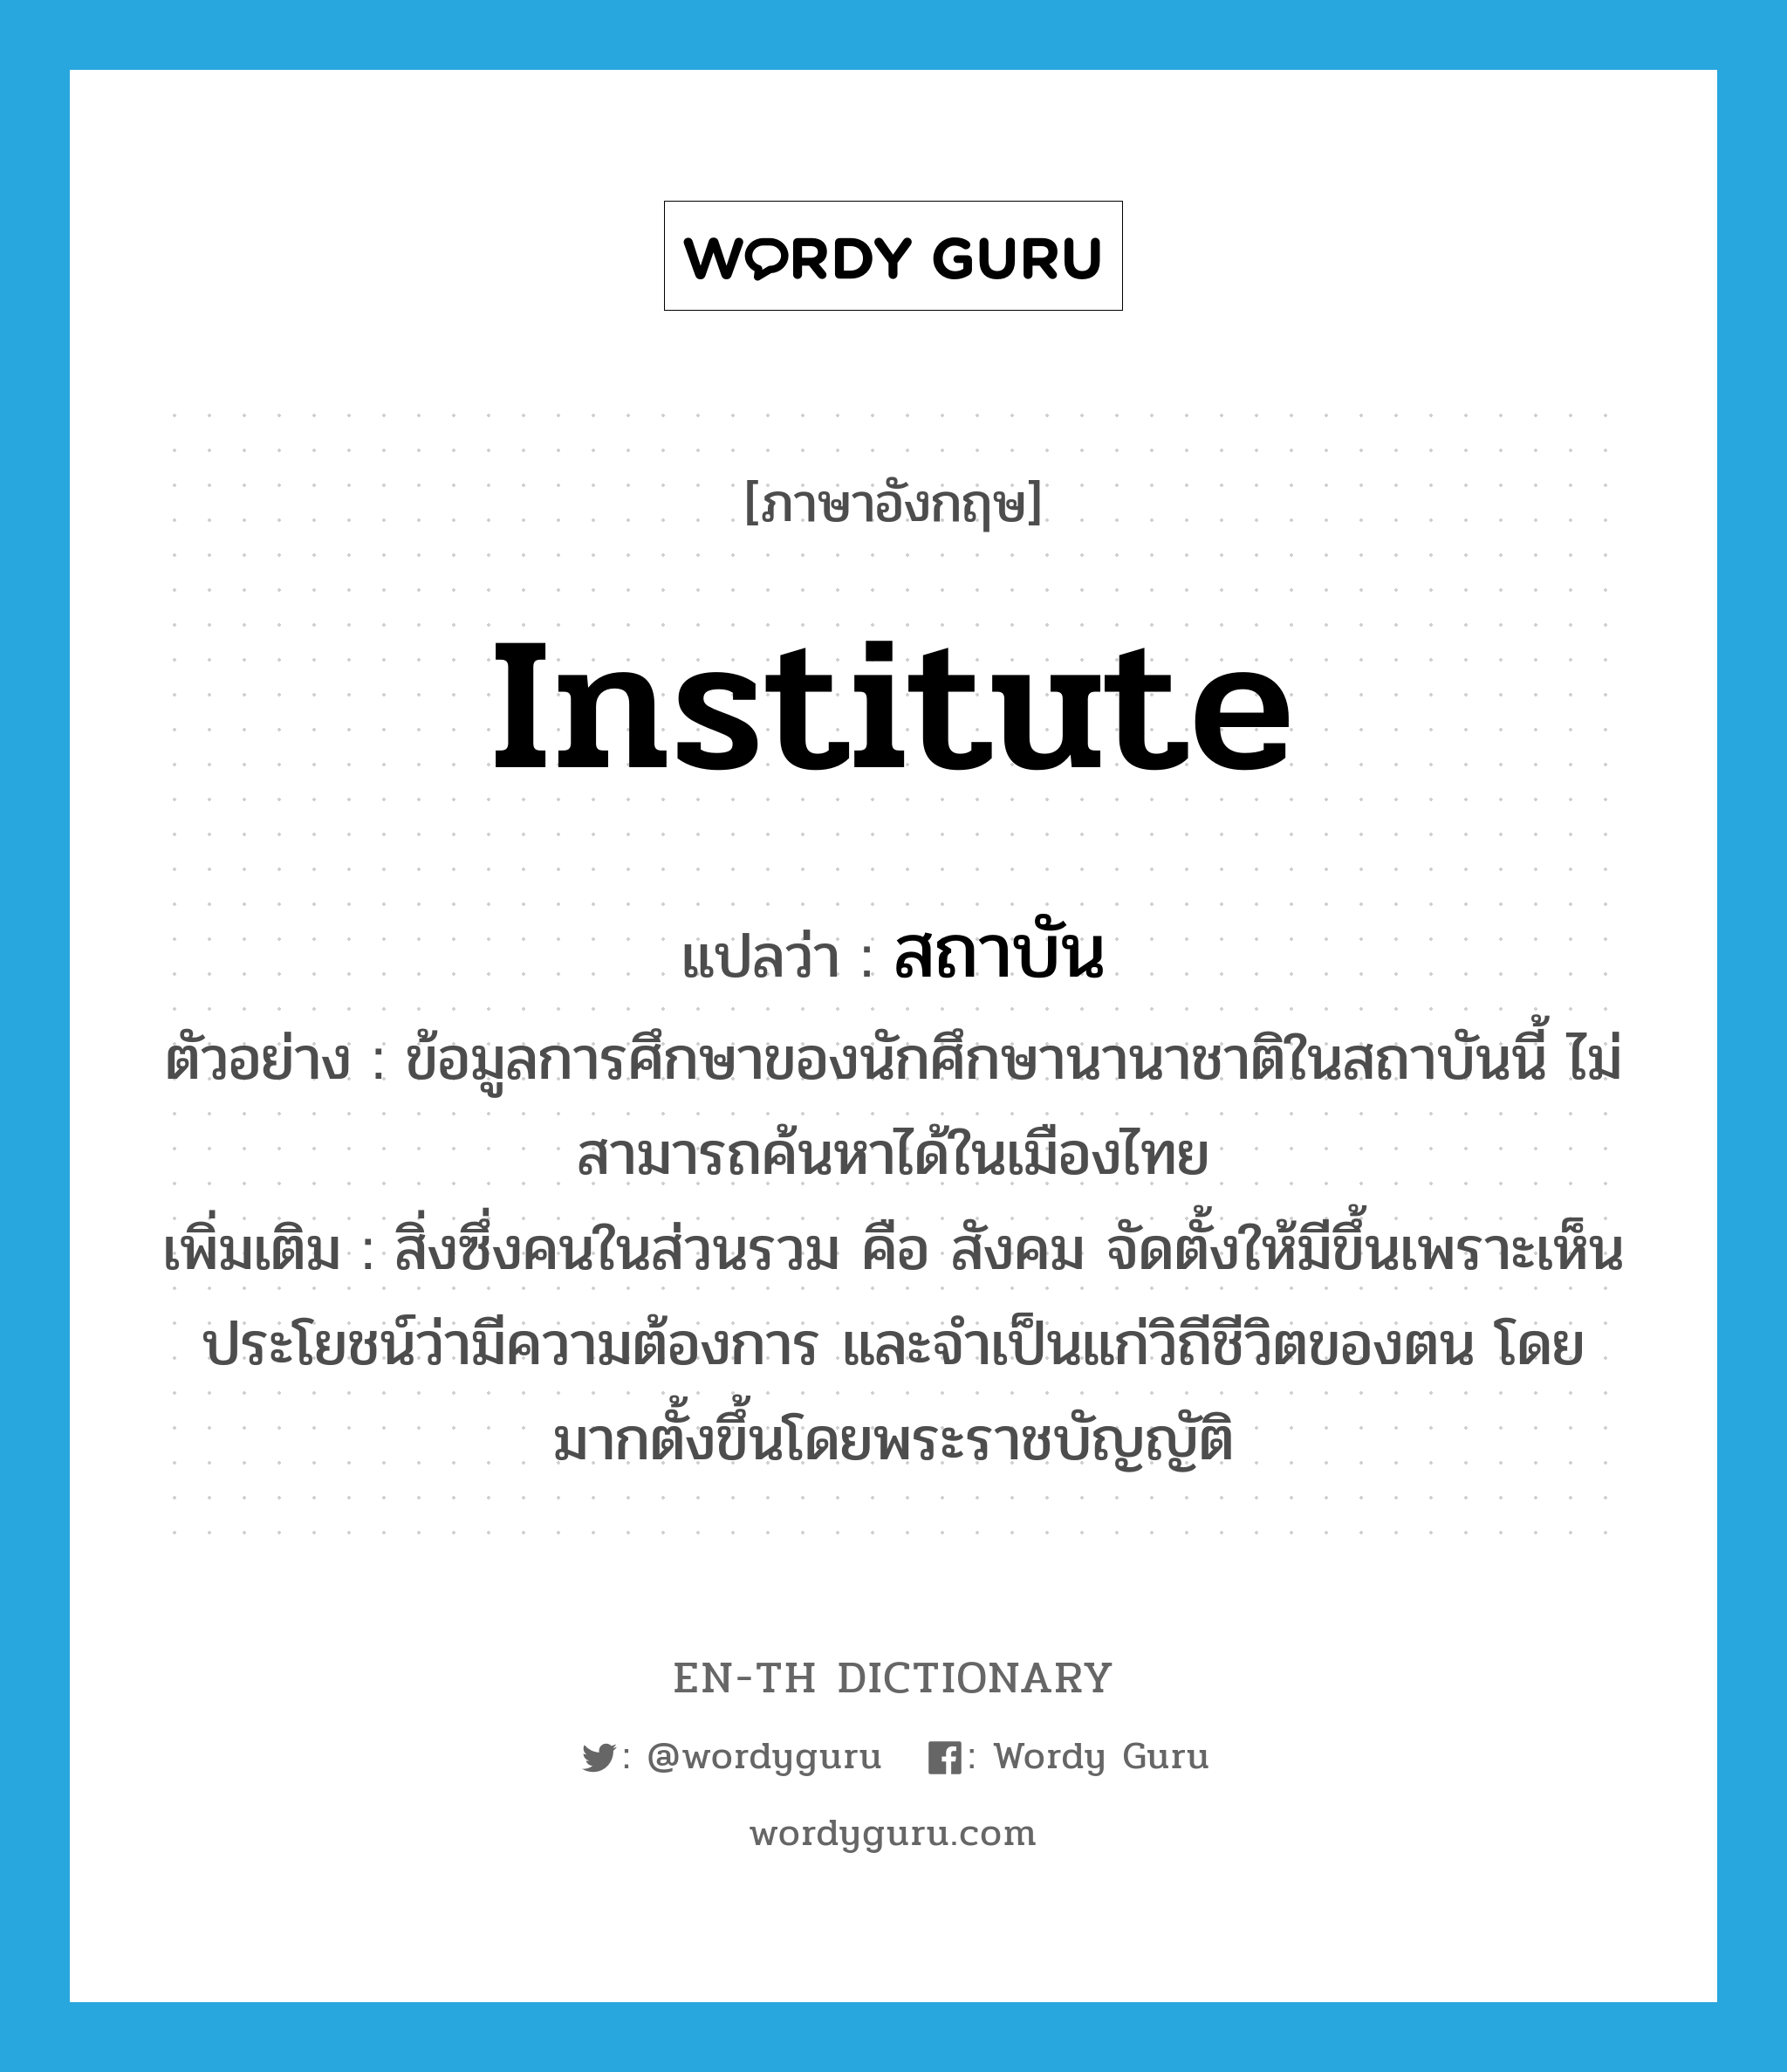 institute แปลว่า?, คำศัพท์ภาษาอังกฤษ institute แปลว่า สถาบัน ประเภท N ตัวอย่าง ข้อมูลการศึกษาของนักศึกษานานาชาติในสถาบันนี้ ไม่สามารถค้นหาได้ในเมืองไทย เพิ่มเติม สิ่งซึ่งคนในส่วนรวม คือ สังคม จัดตั้งให้มีขึ้นเพราะเห็นประโยชน์ว่ามีความต้องการ และจำเป็นแก่วิถีชีวิตของตน โดยมากตั้งขึ้นโดยพระราชบัญญัติ หมวด N